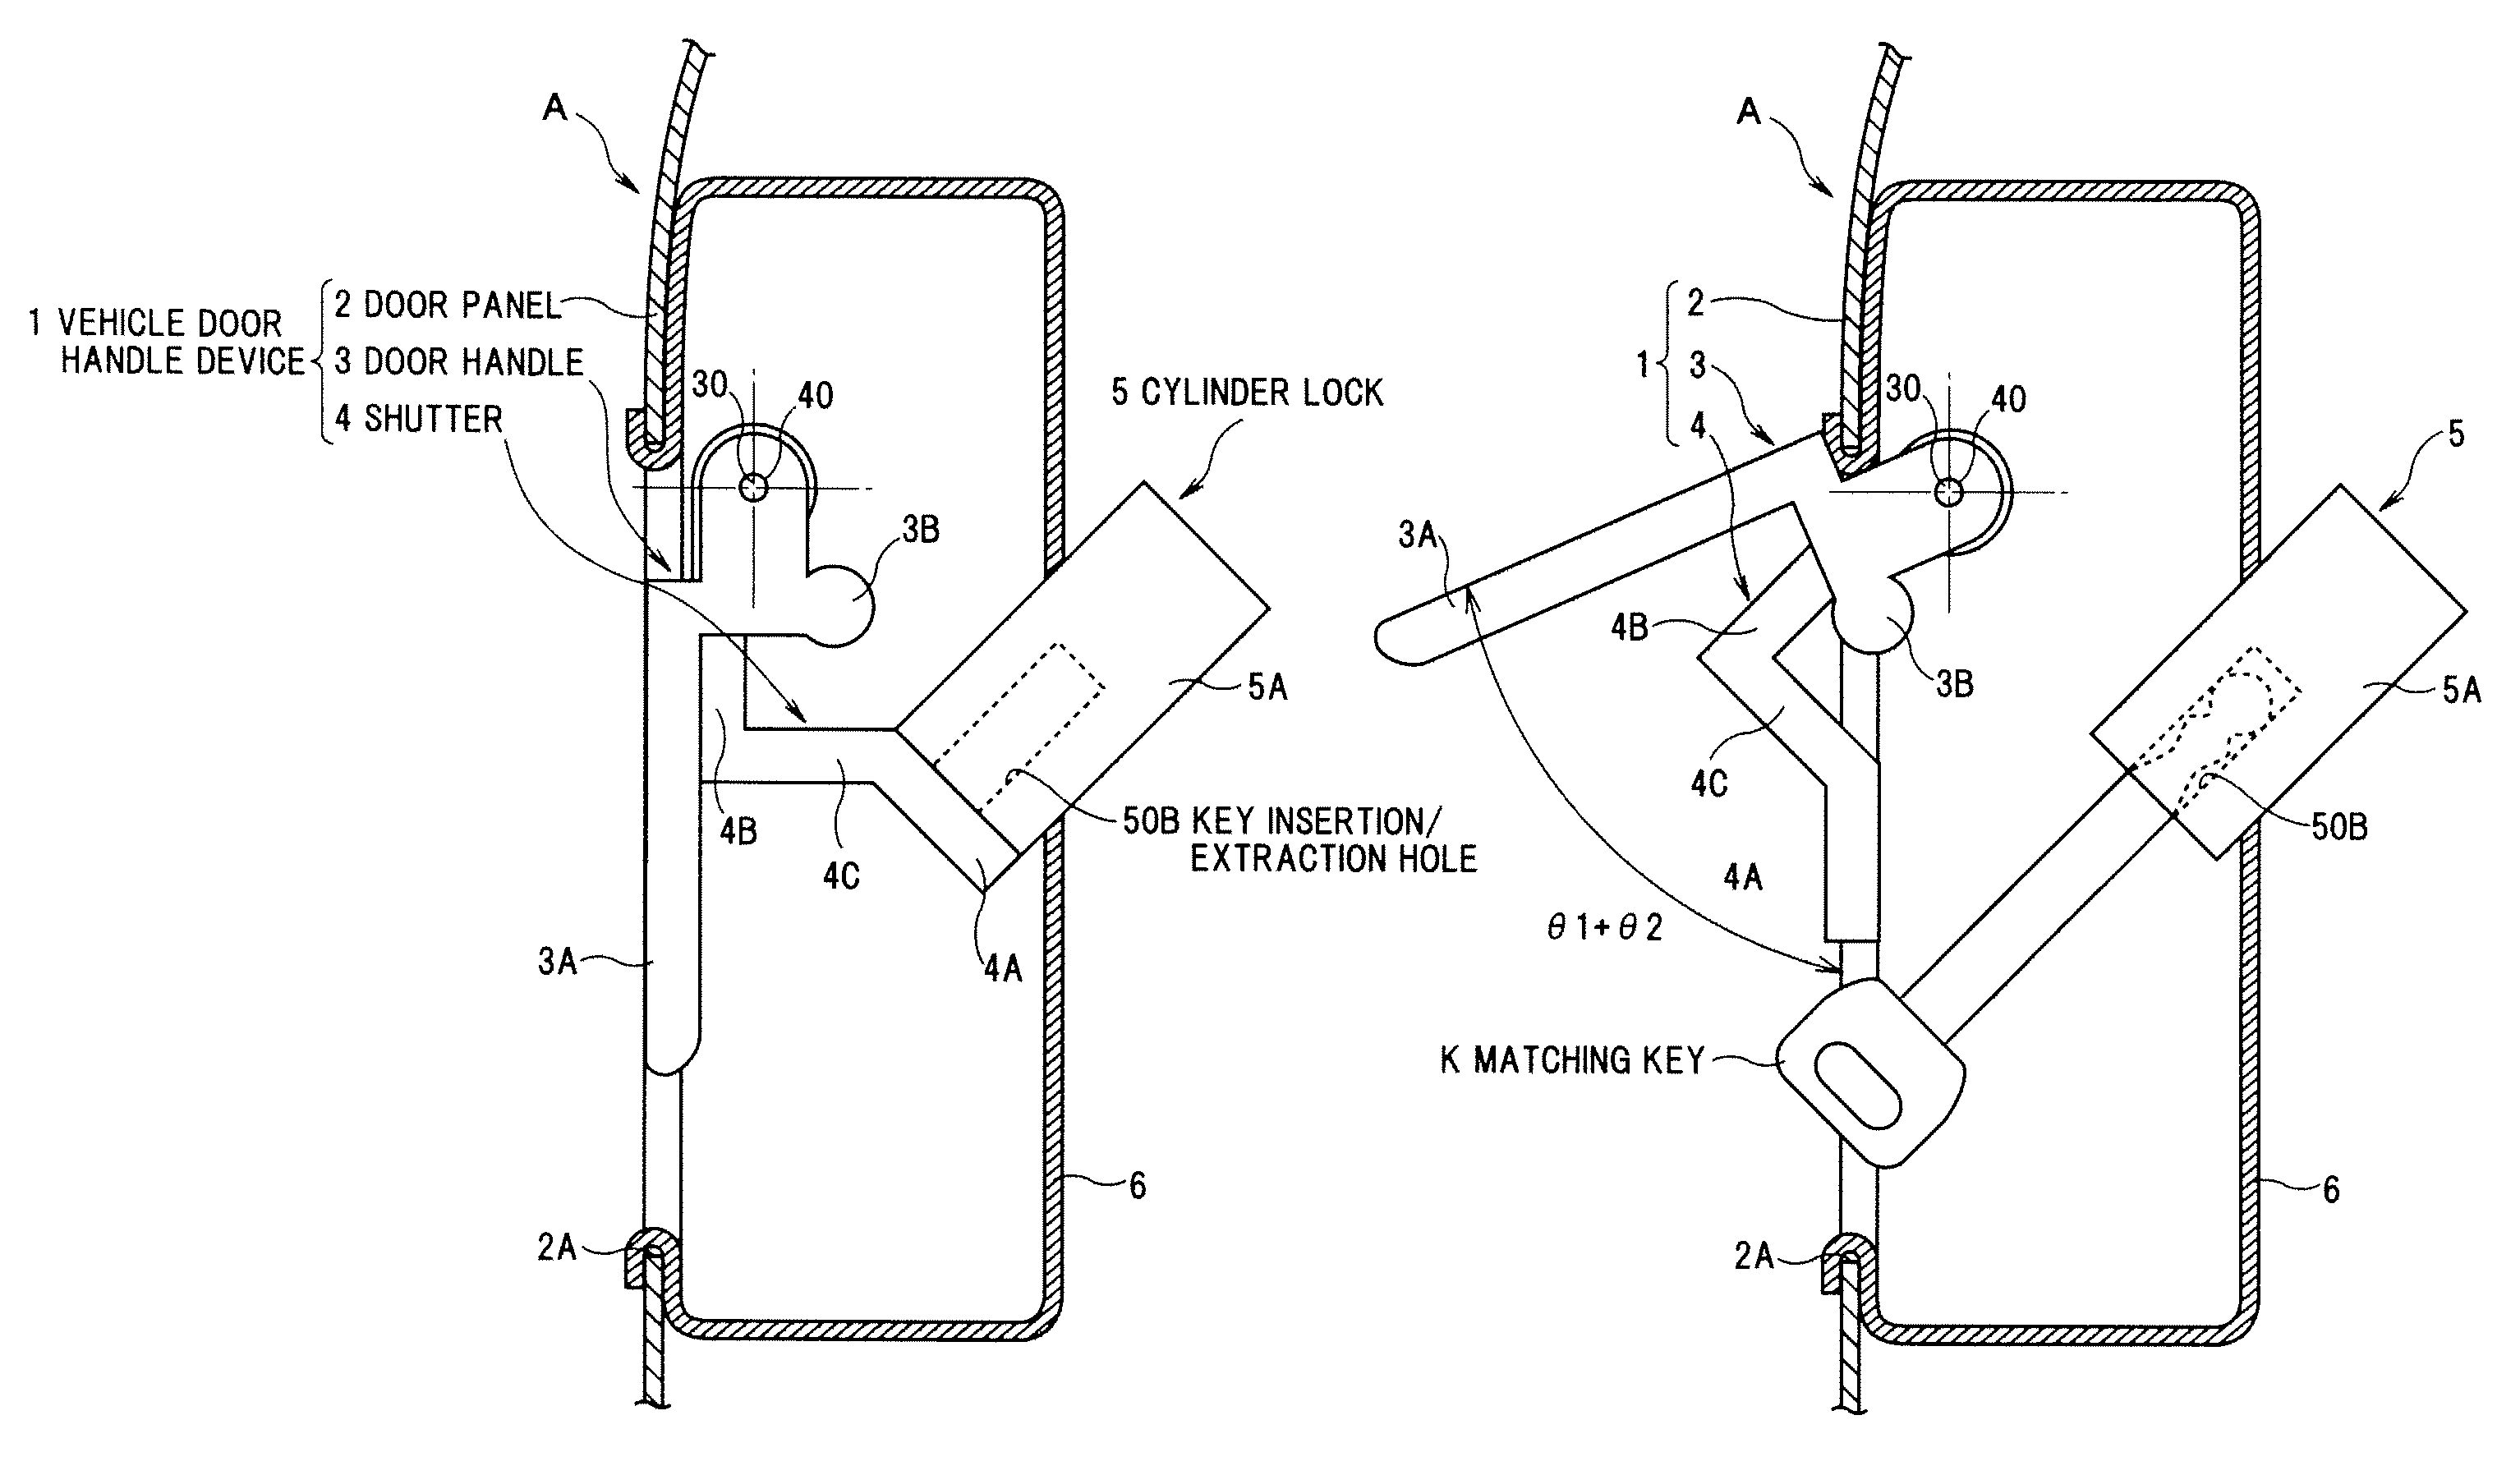 Vehicle door handle device